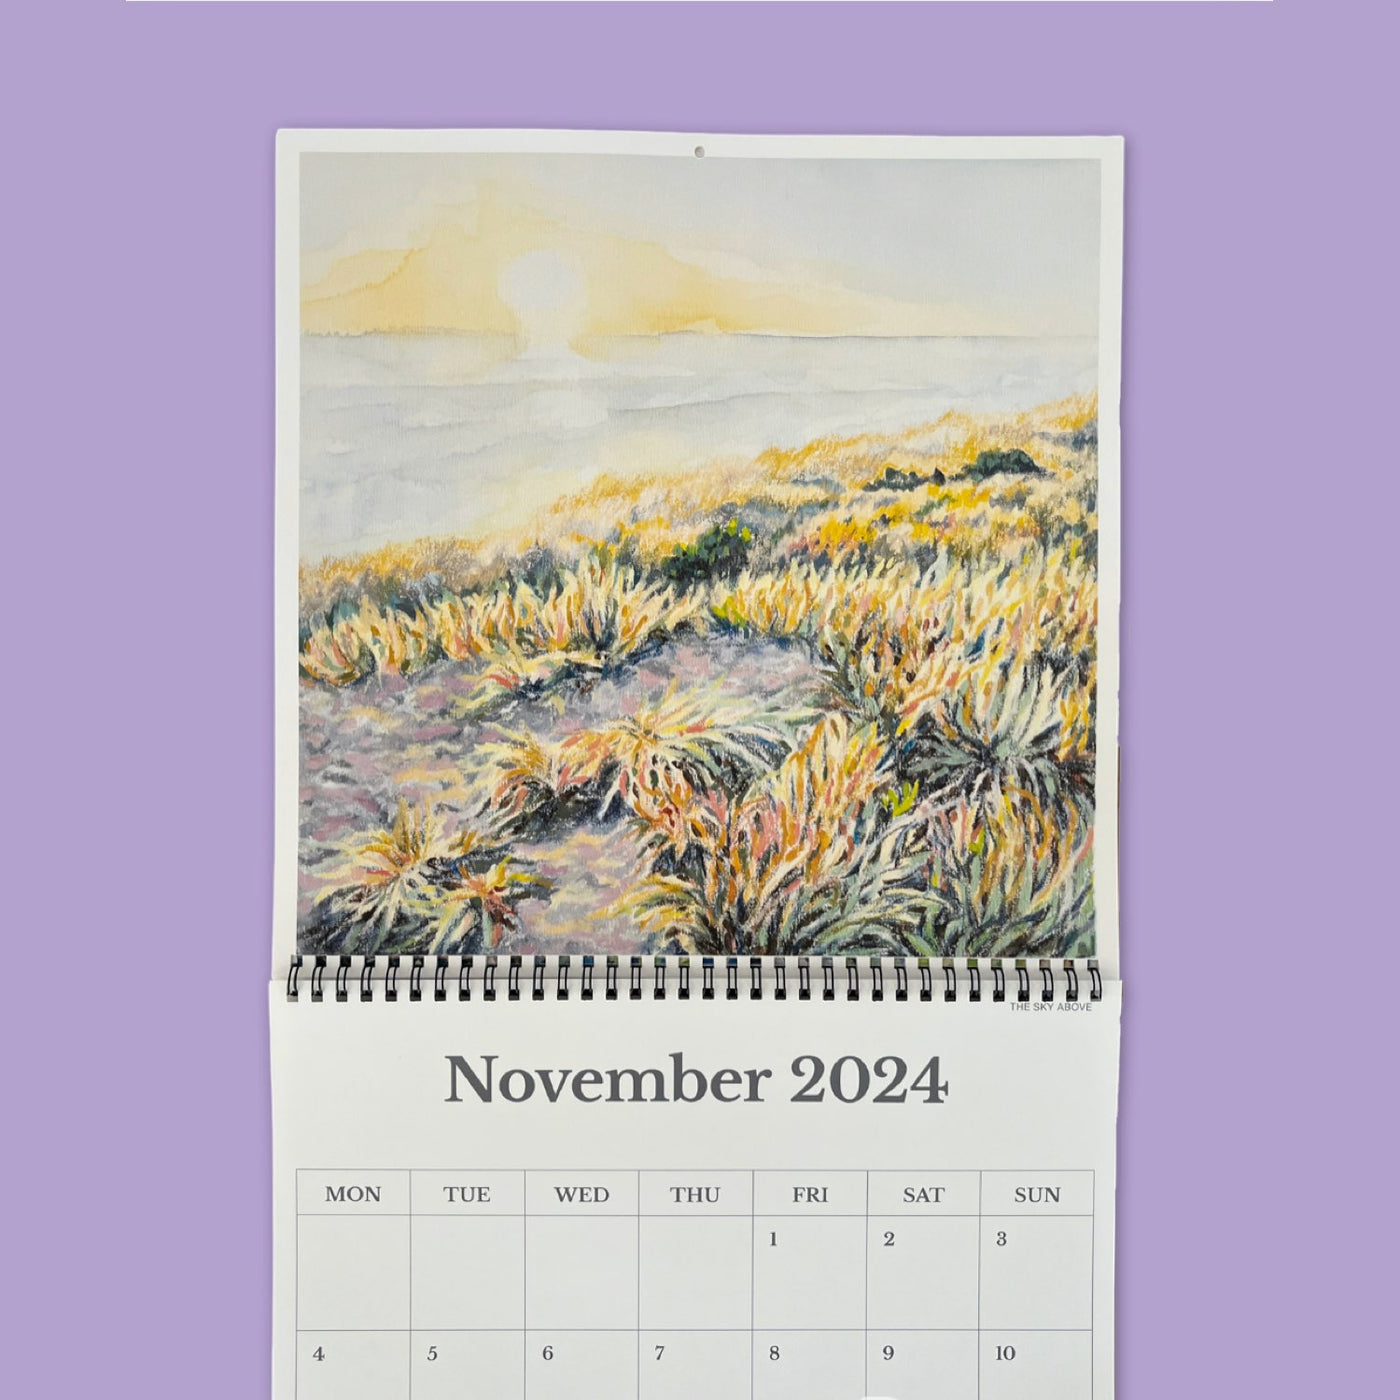 2024 The Dunes Calendar